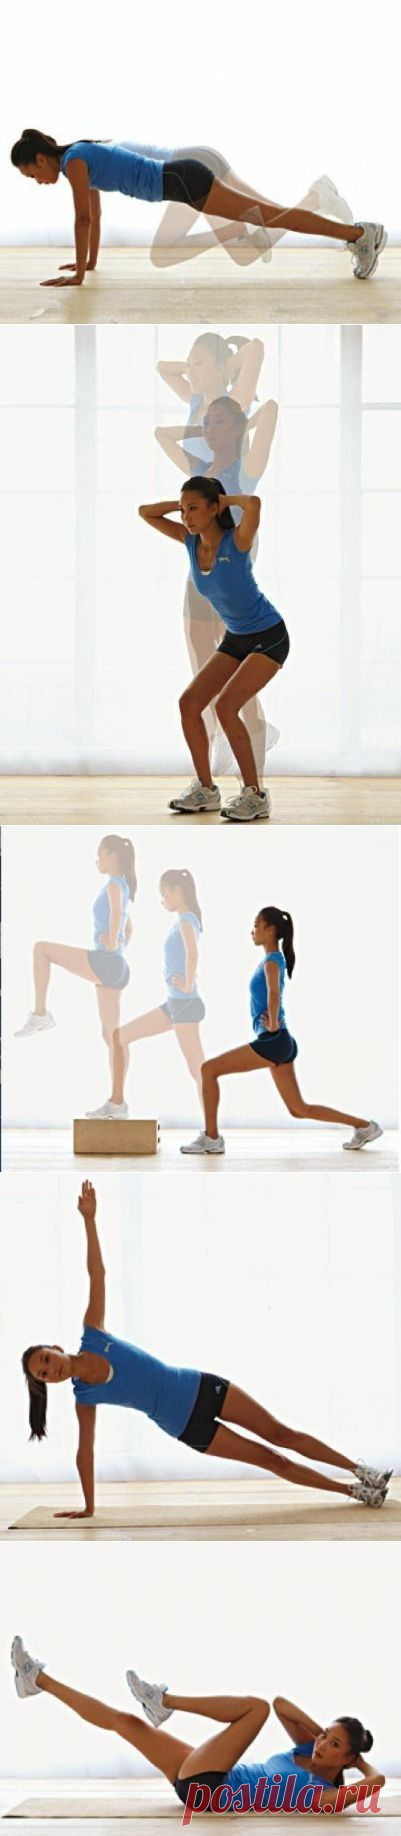 Секреты красоты и здоровья
Упражнения для похудения: 8 пятнадцатиминутных тренировок